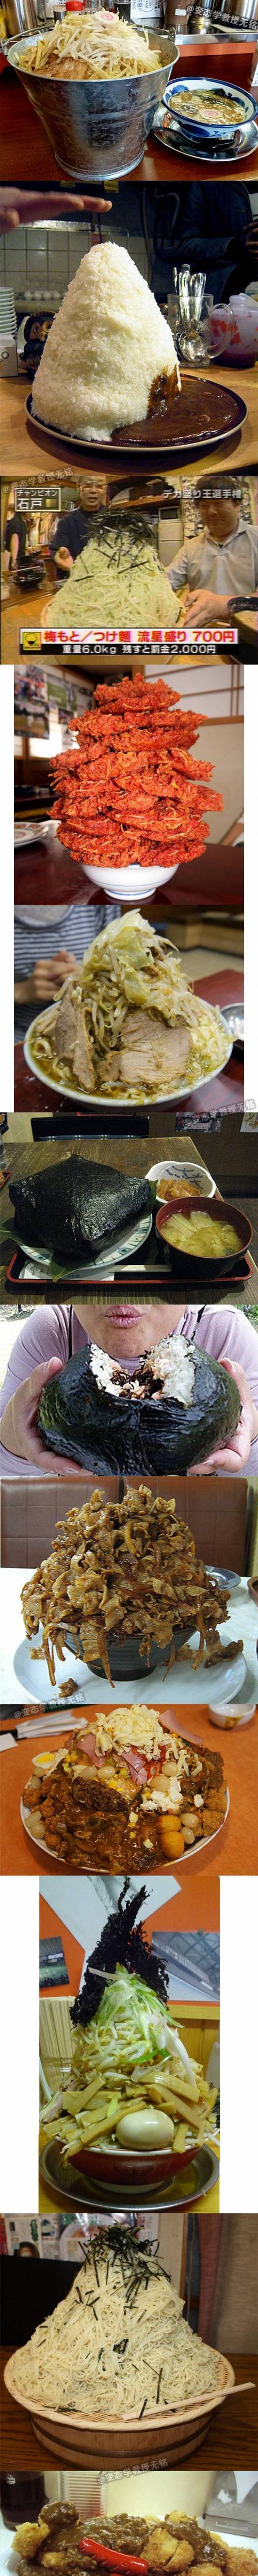 14 진짜 대용량 일본 음식들.jpg